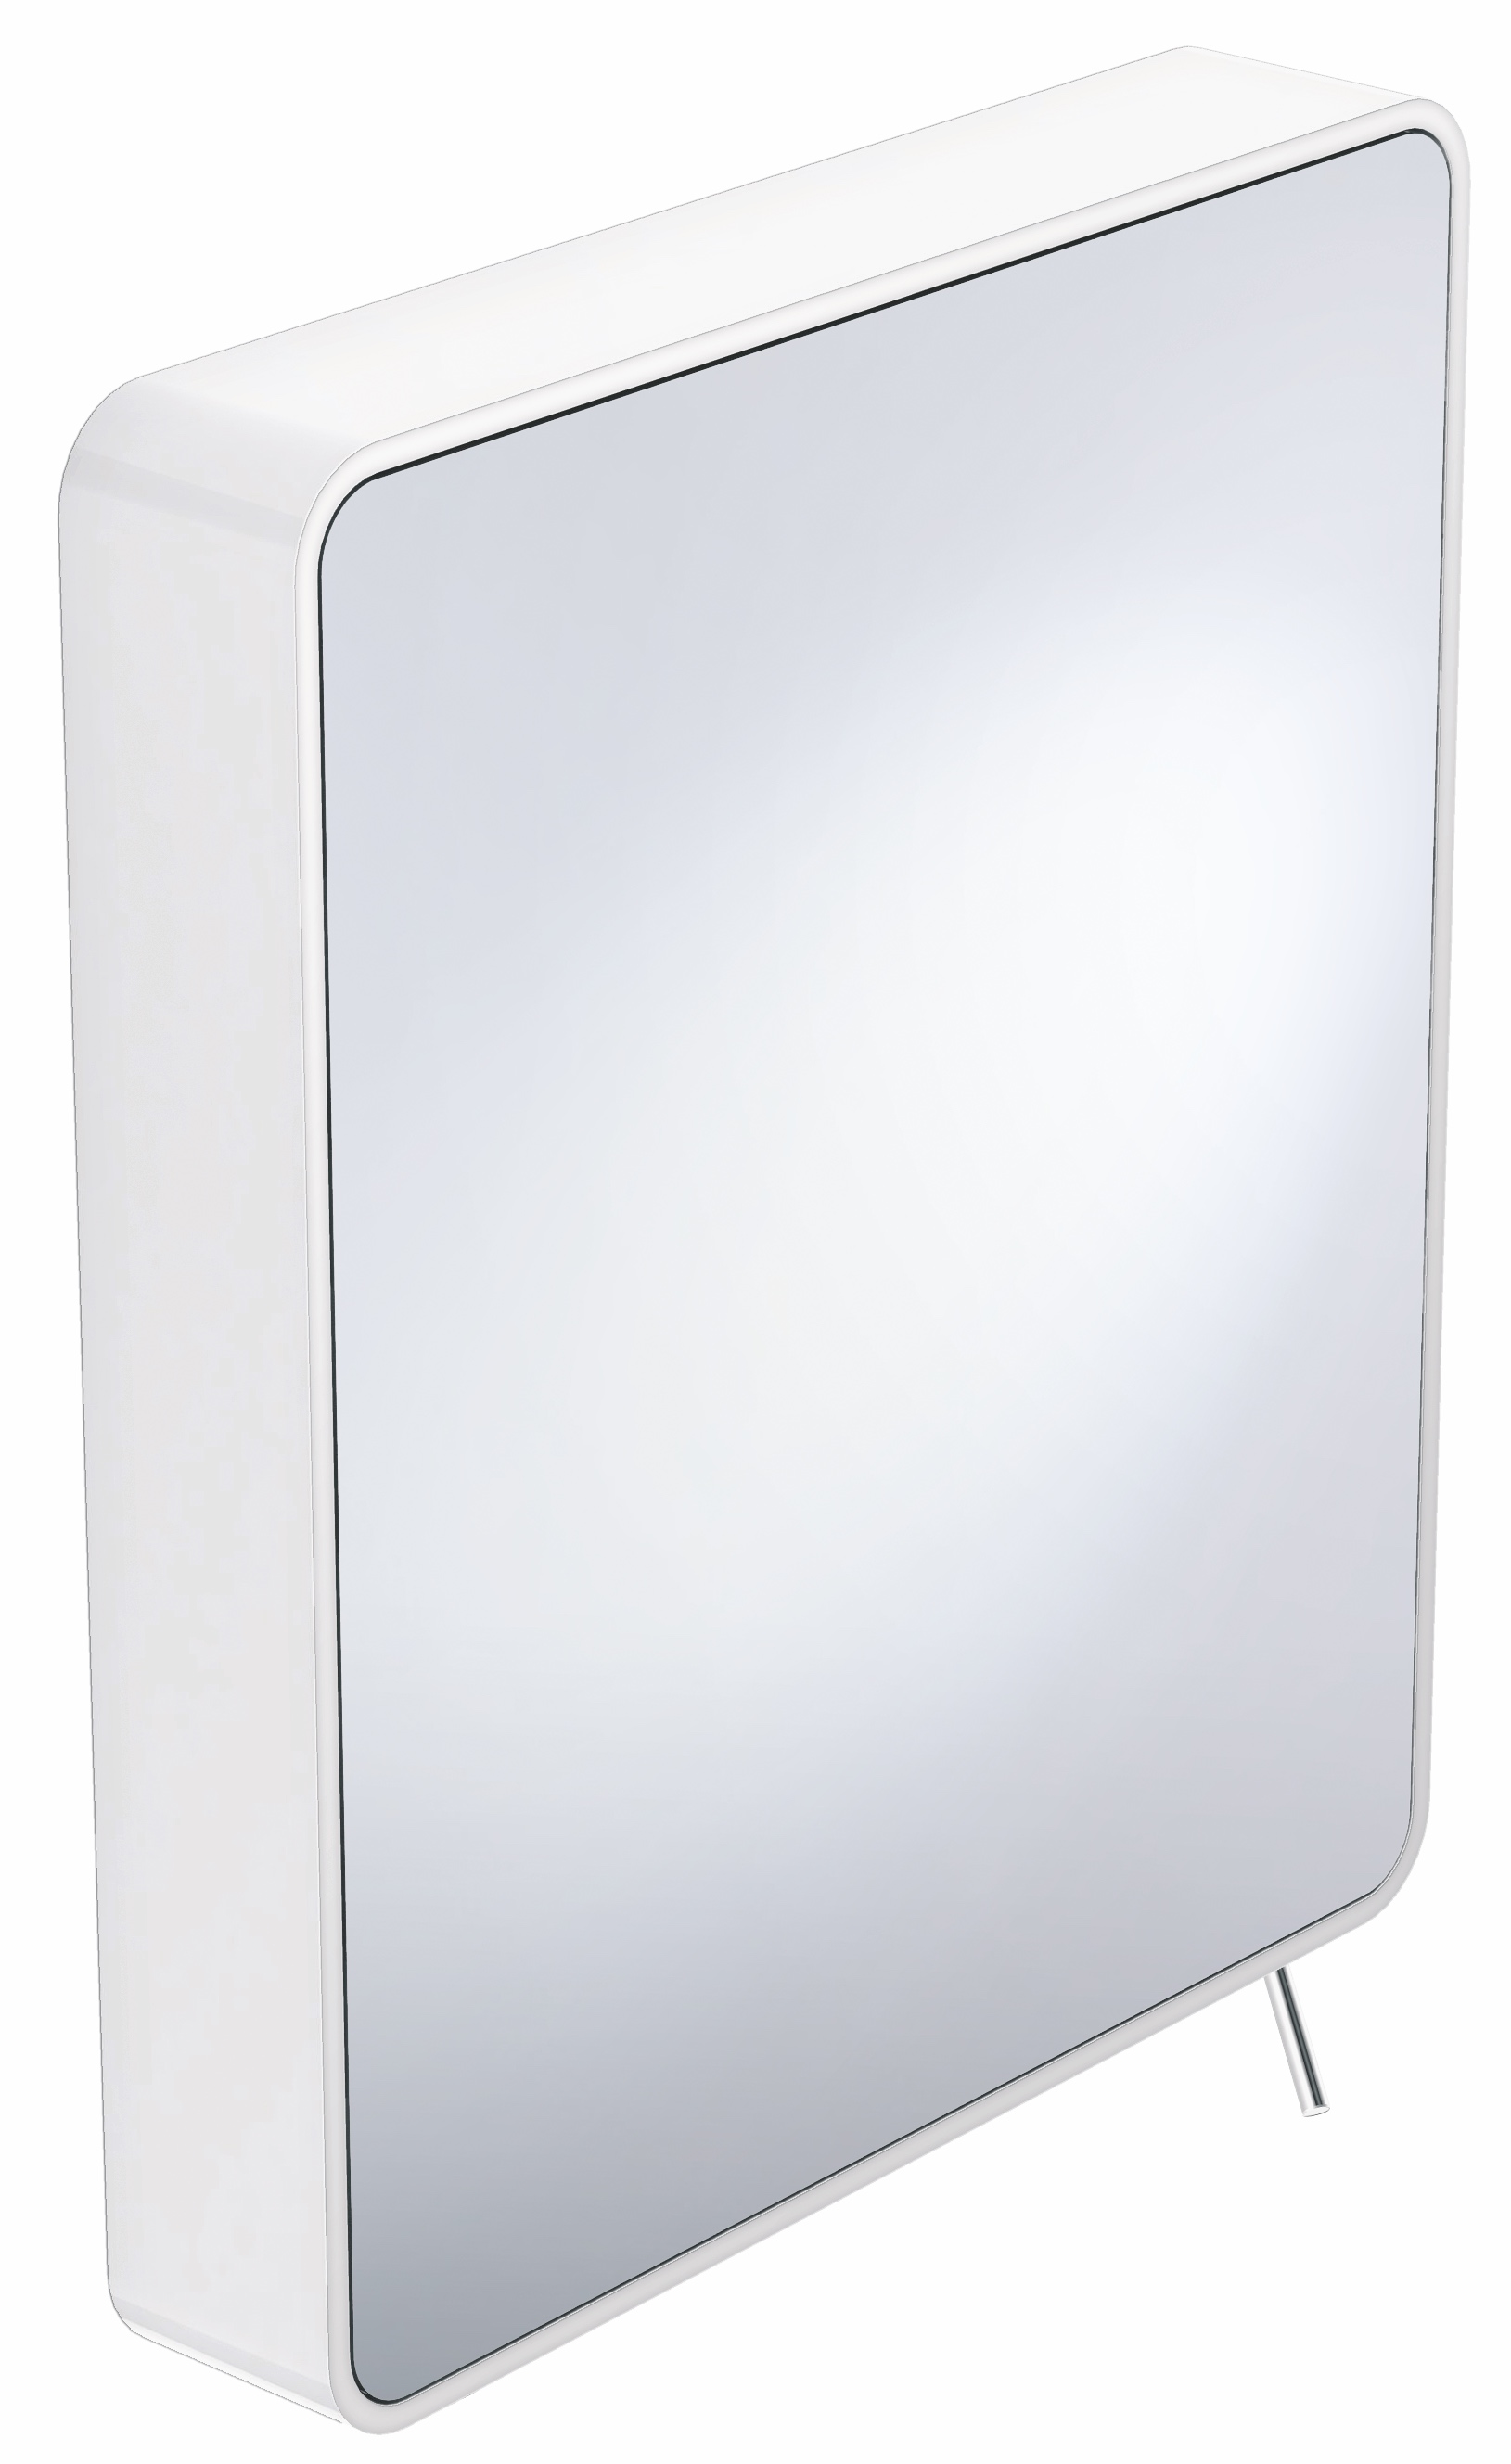 Kippspiegel Sys 800, weiß, B:580mm, H:680mm, T:115mm